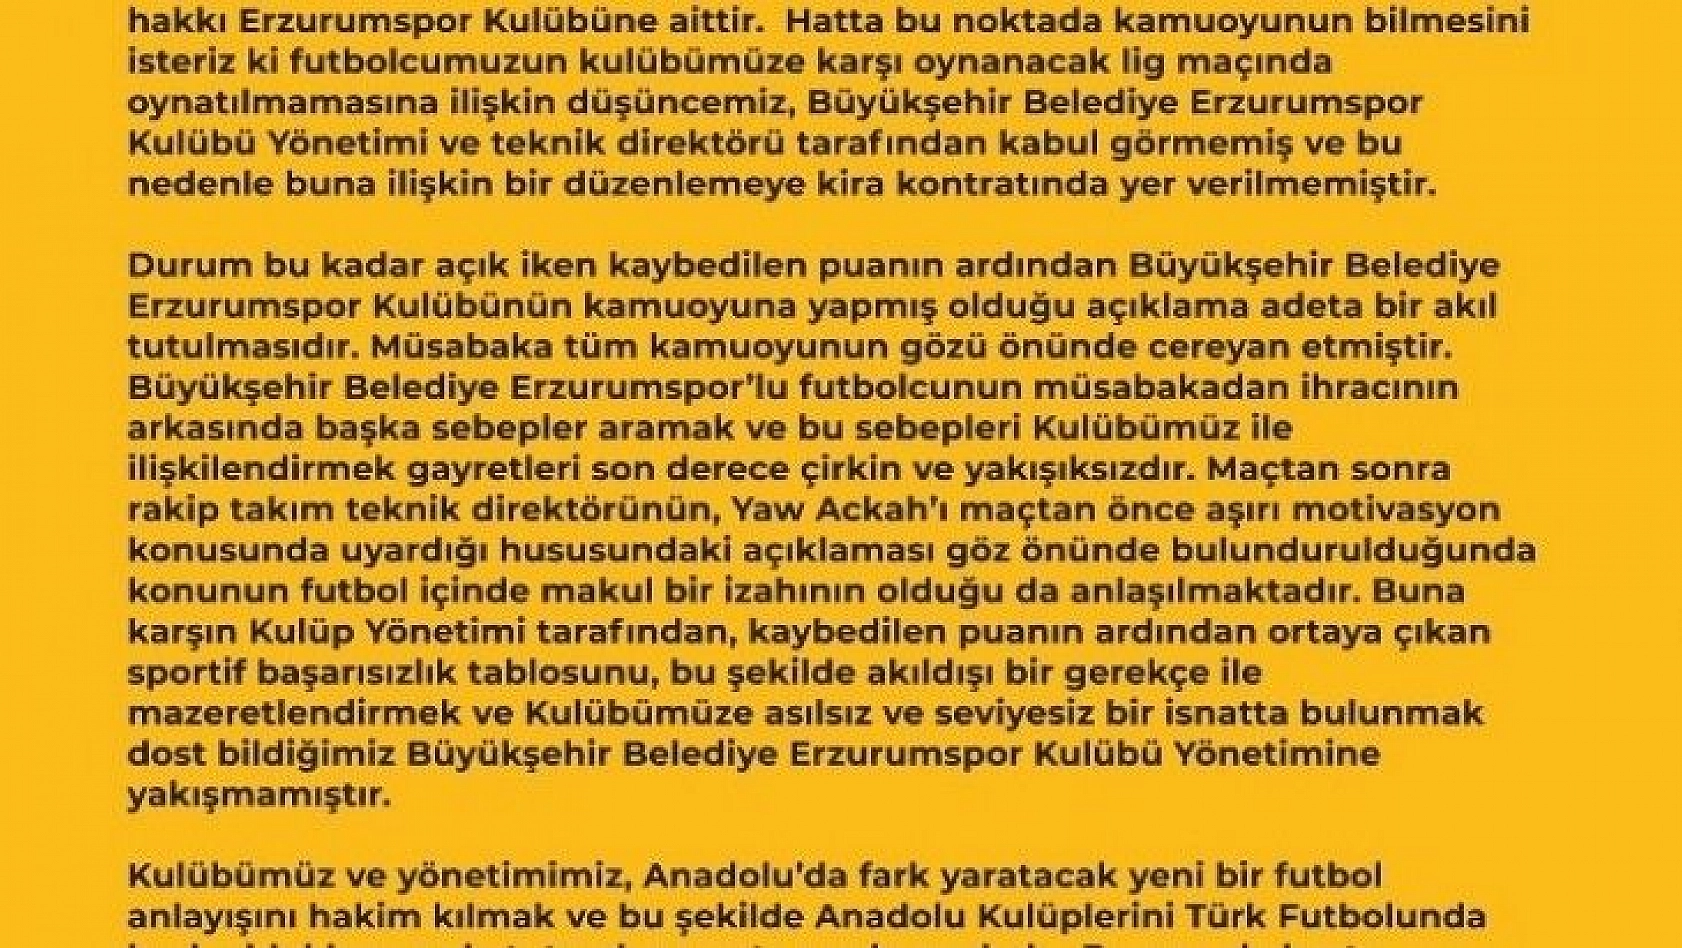 Kayserispor Kulübü Erzurumspor'u mahkemeye verecek